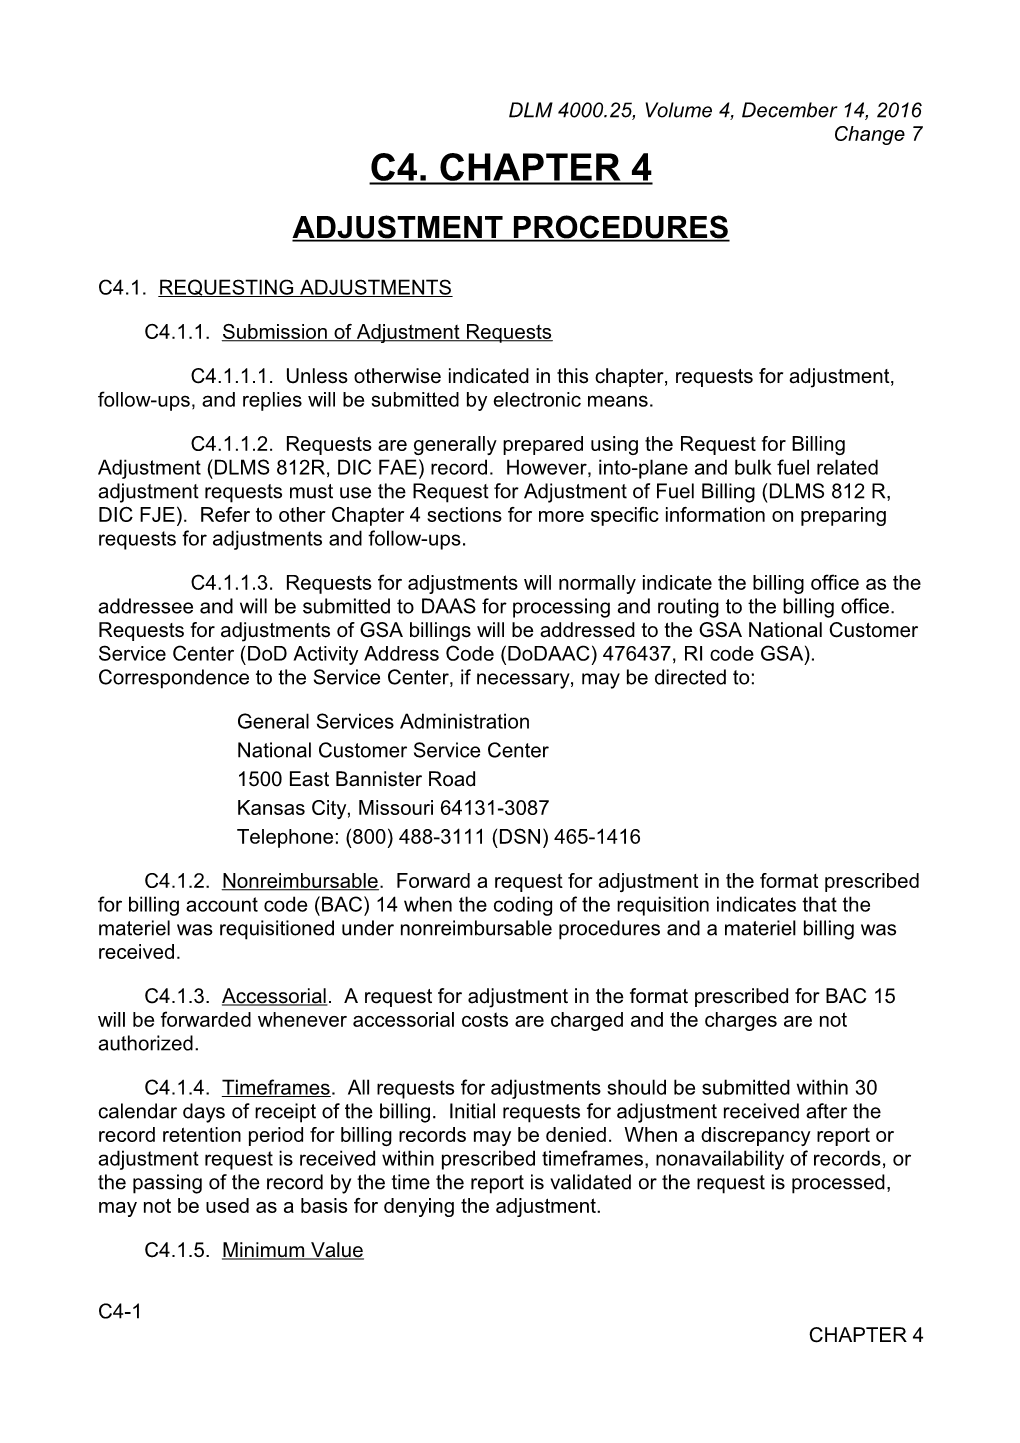 Chapter 4 - Adjustment Procedures